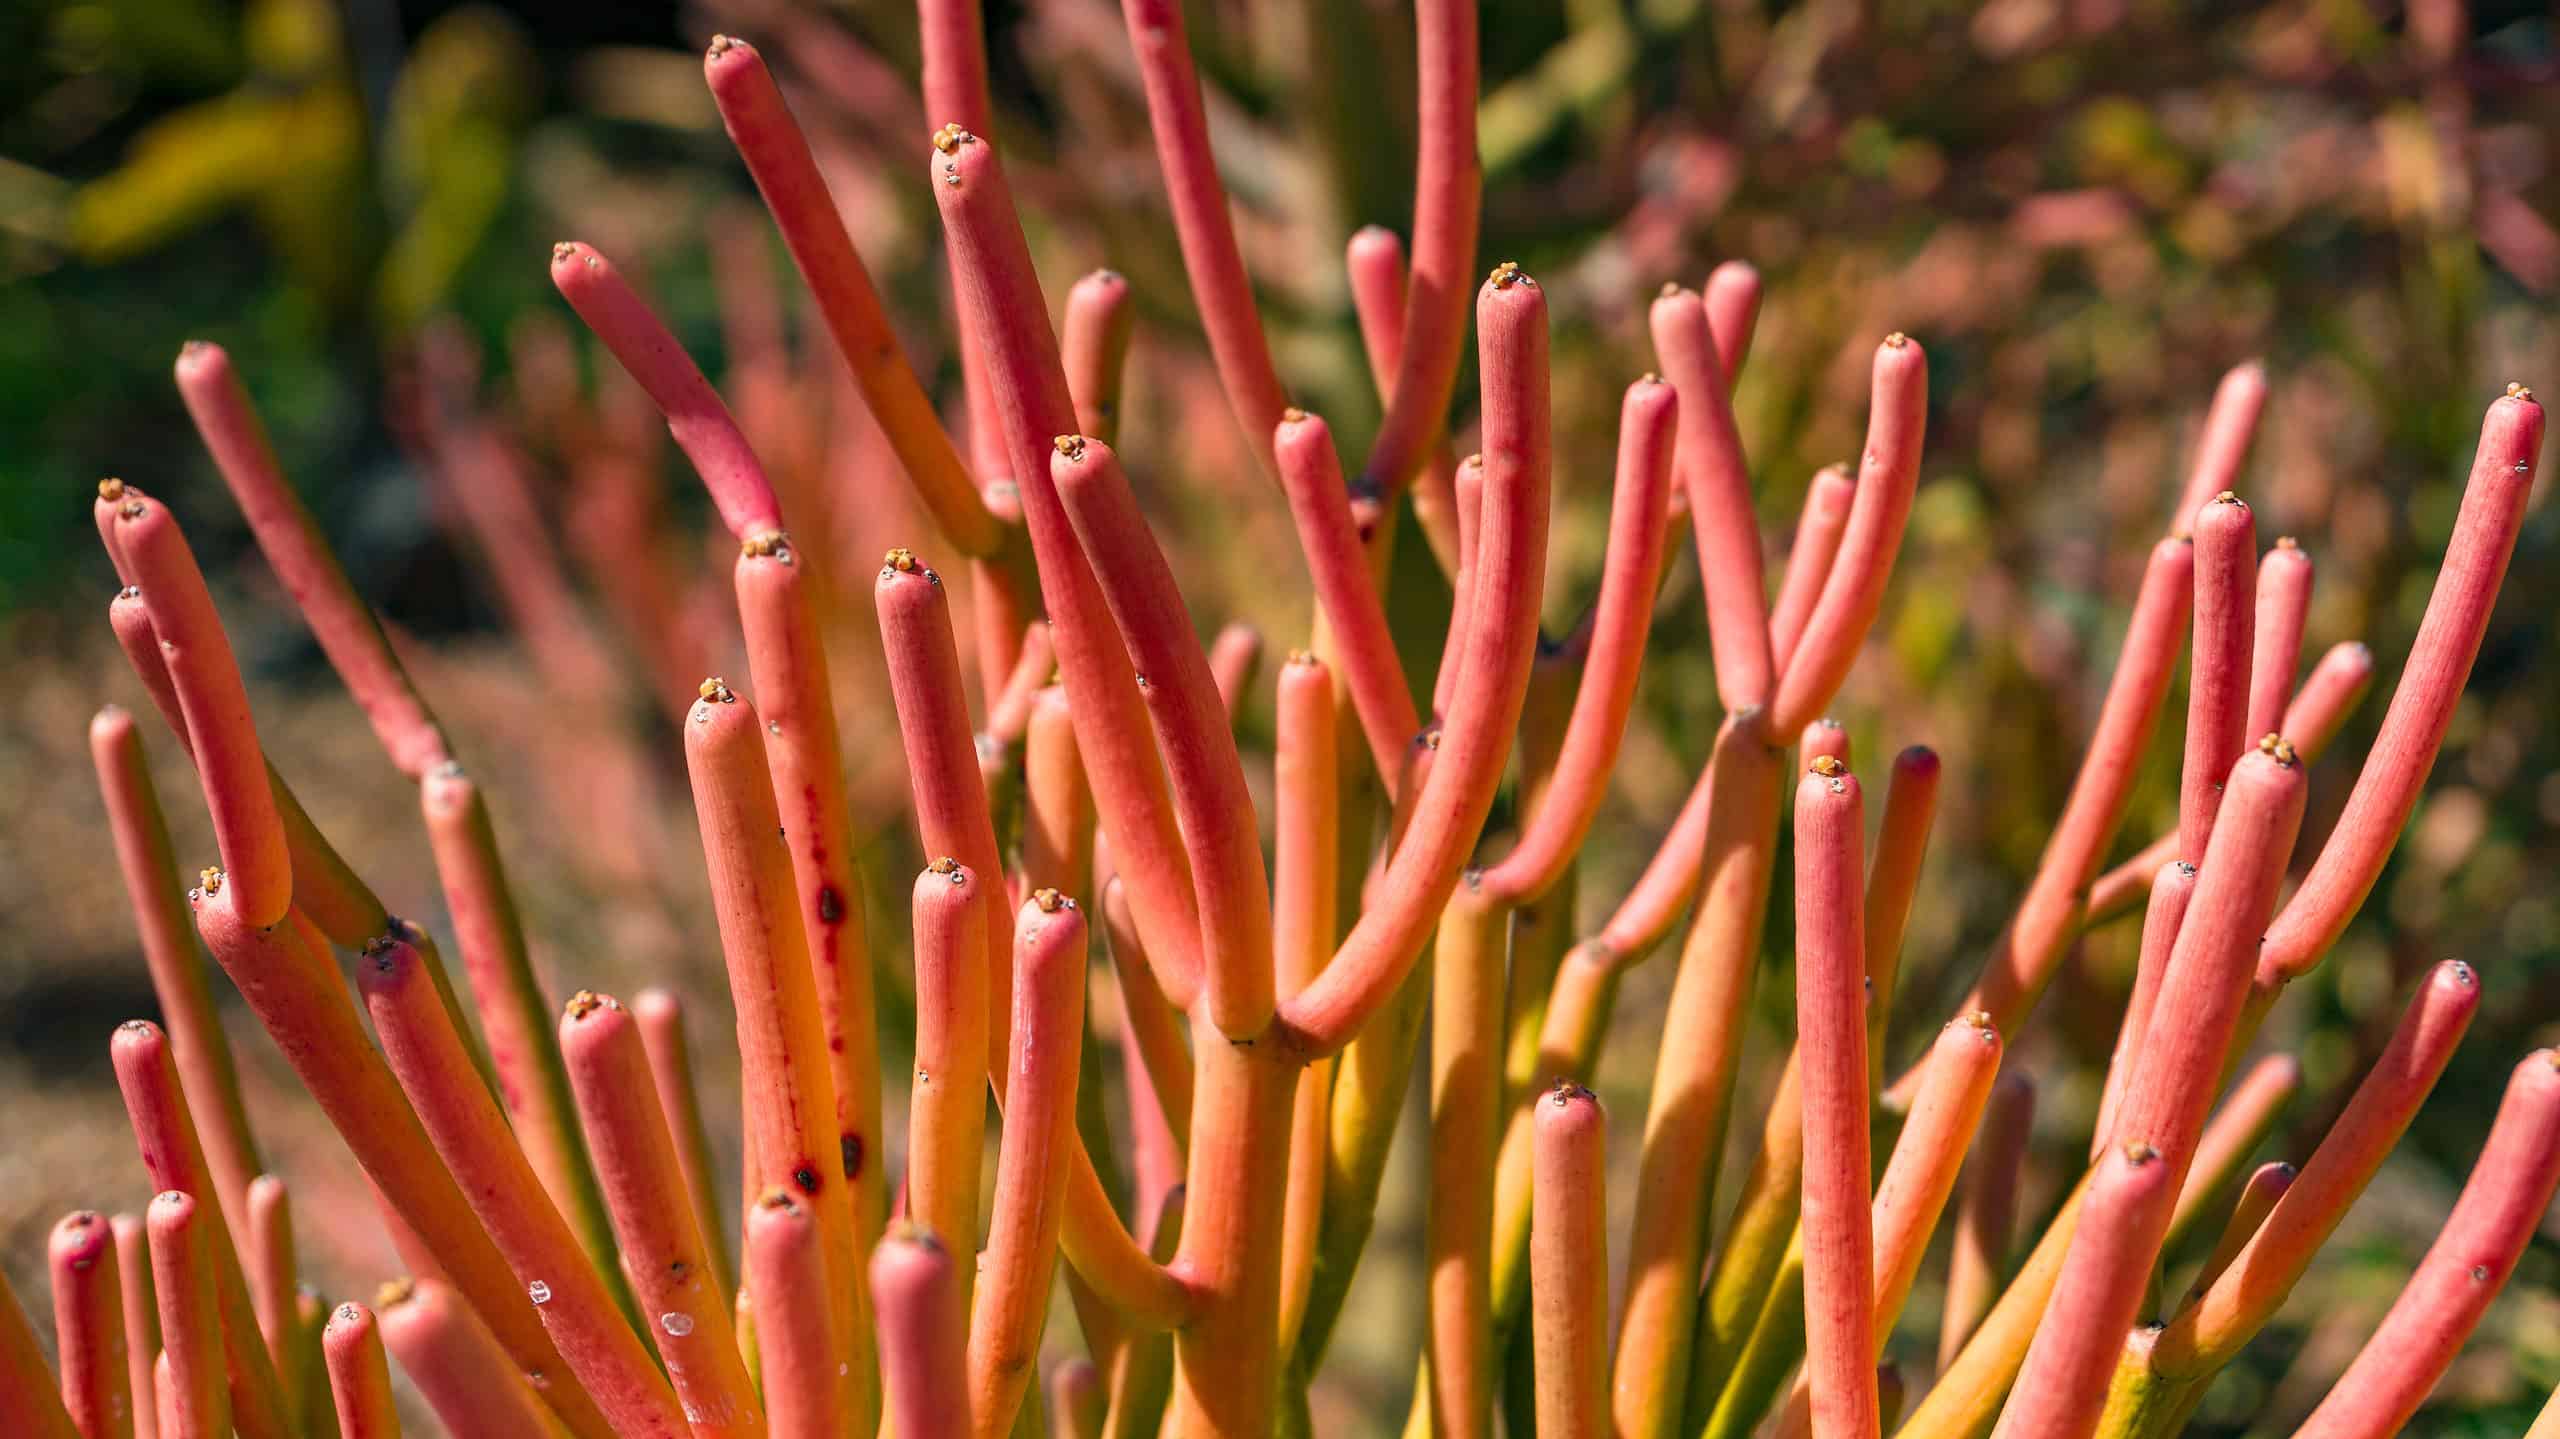 Bright orange-red pencil cactus